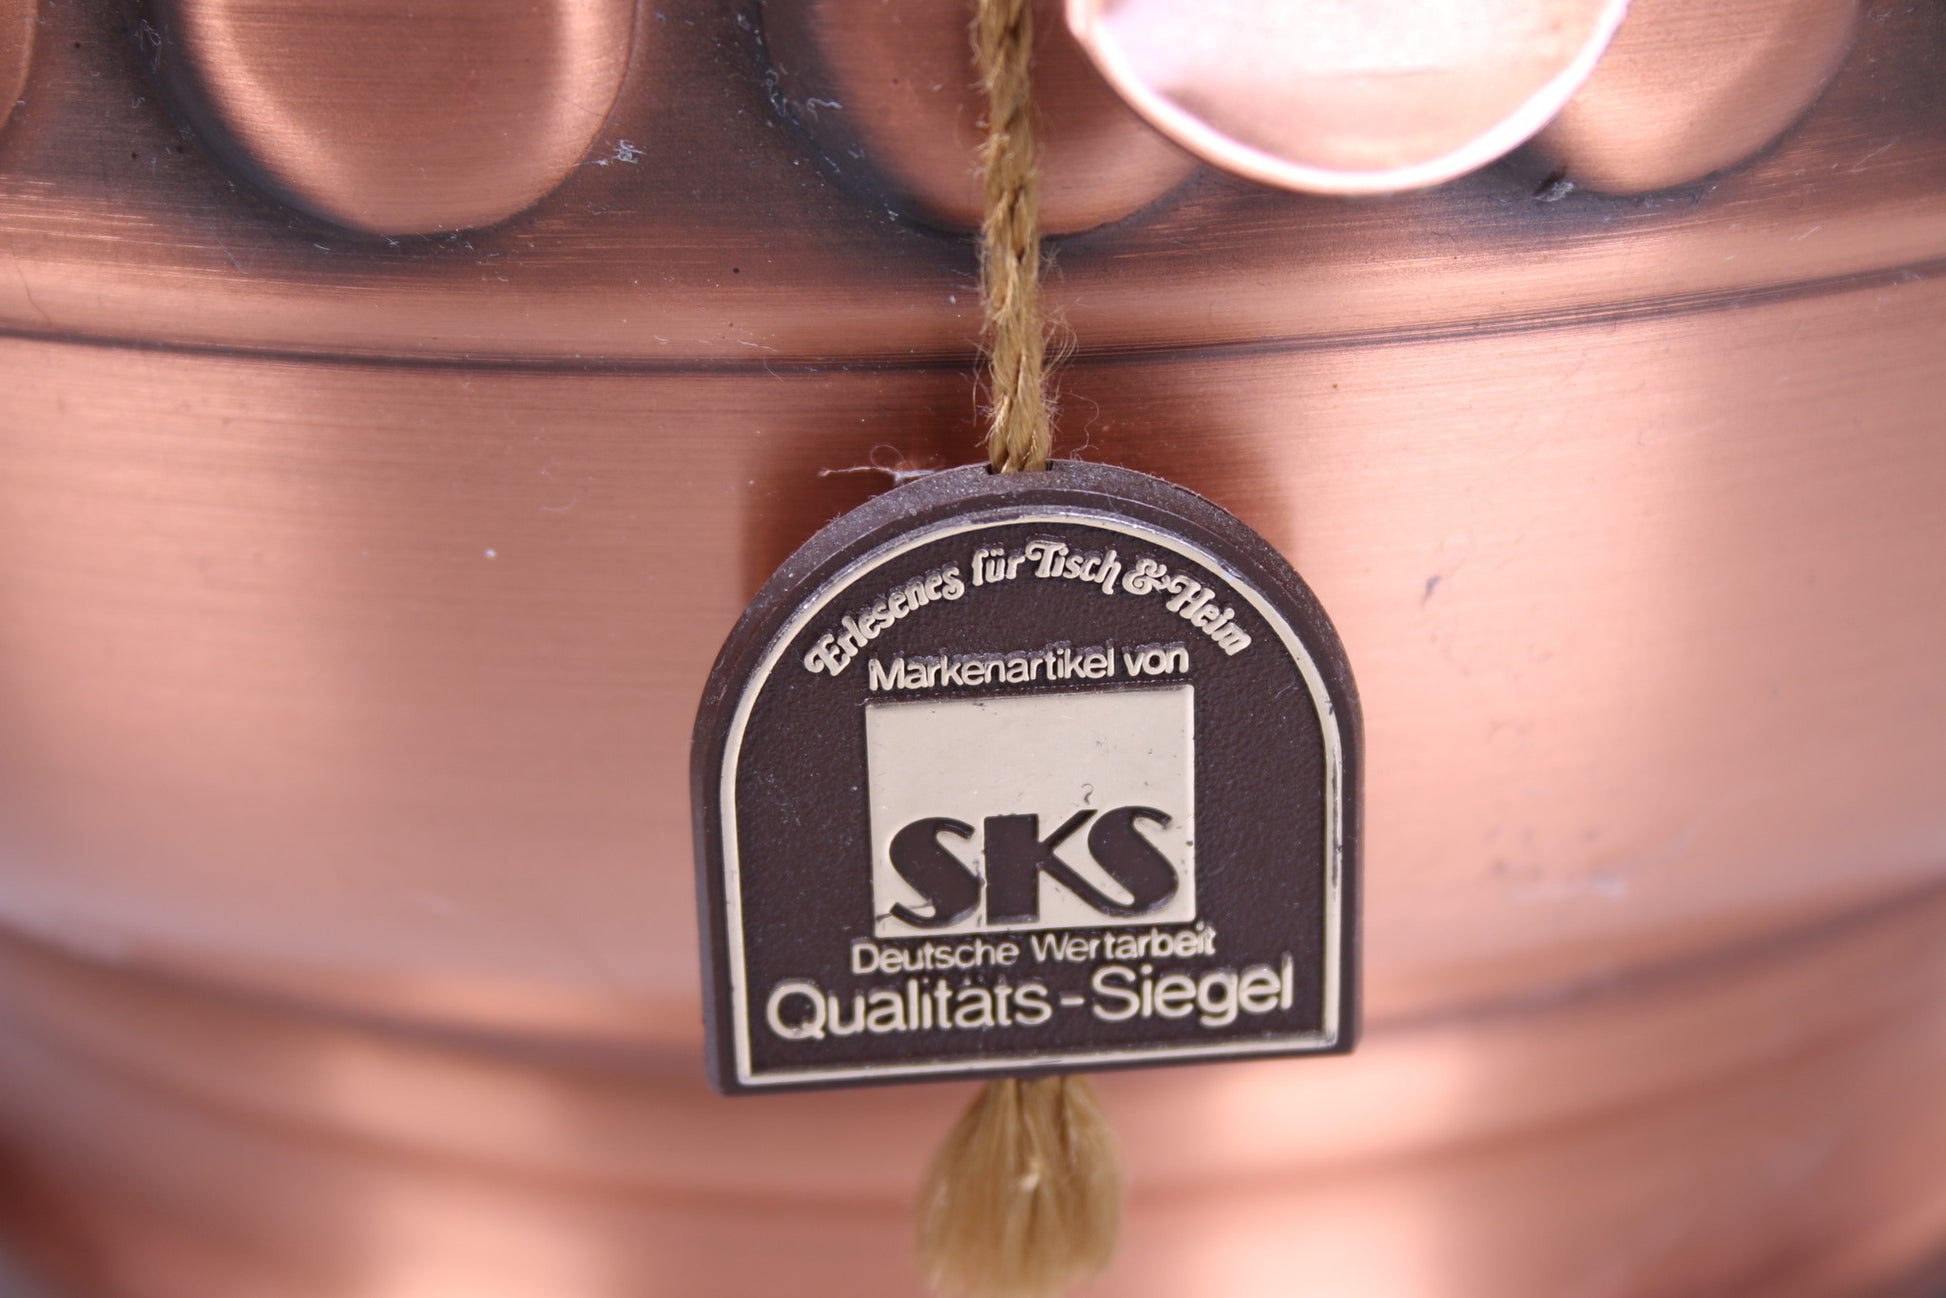 Mooie vintage koperen kan of vaas van het merk sks detail label merk